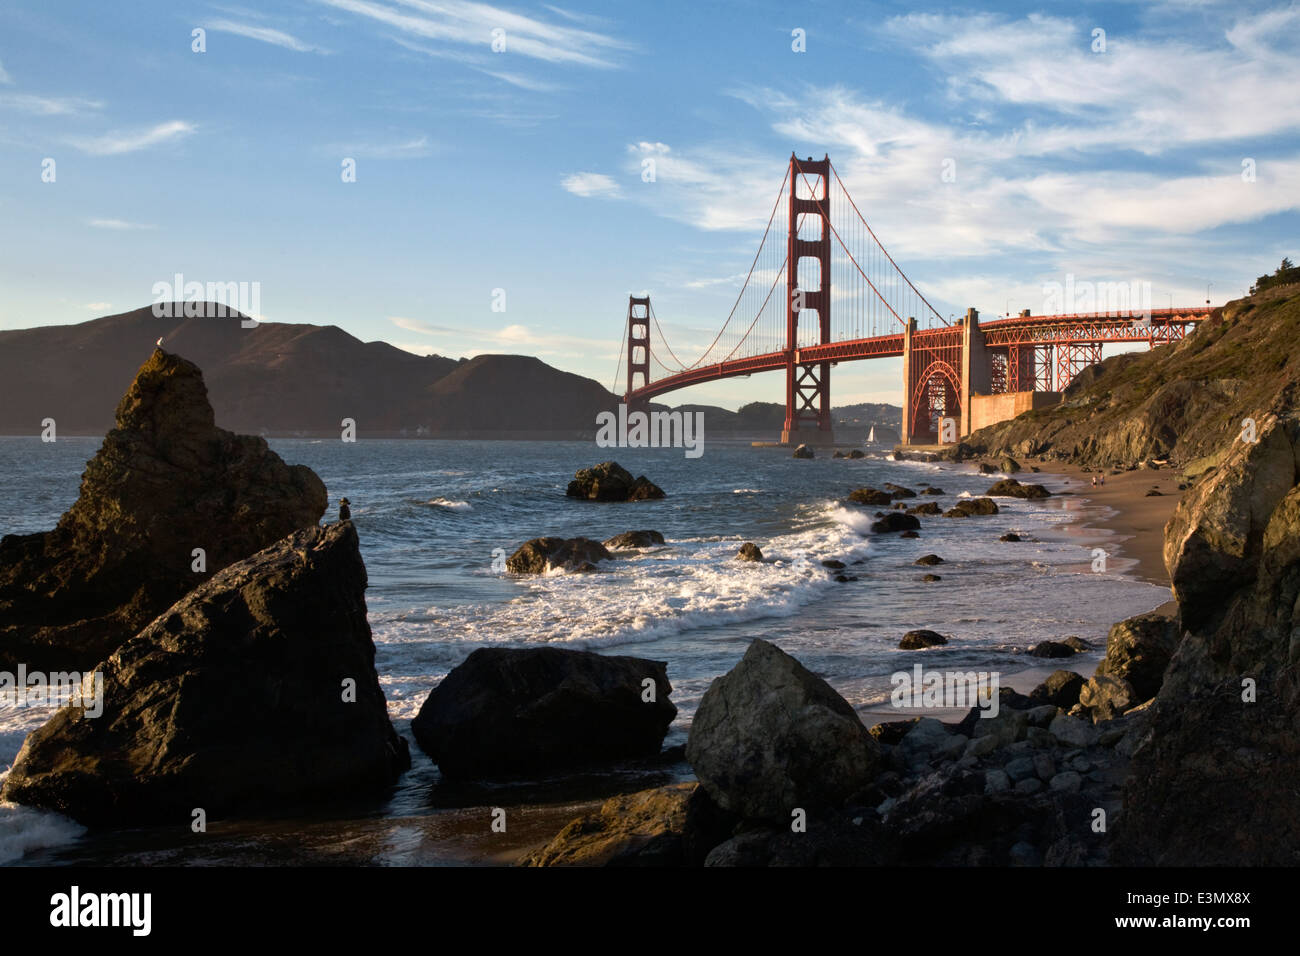 THE GOLDEN GATE BRIDGE as seen from BAKER BEACH - SAN FRANCISCO, CALIFORNIA Stock Photo